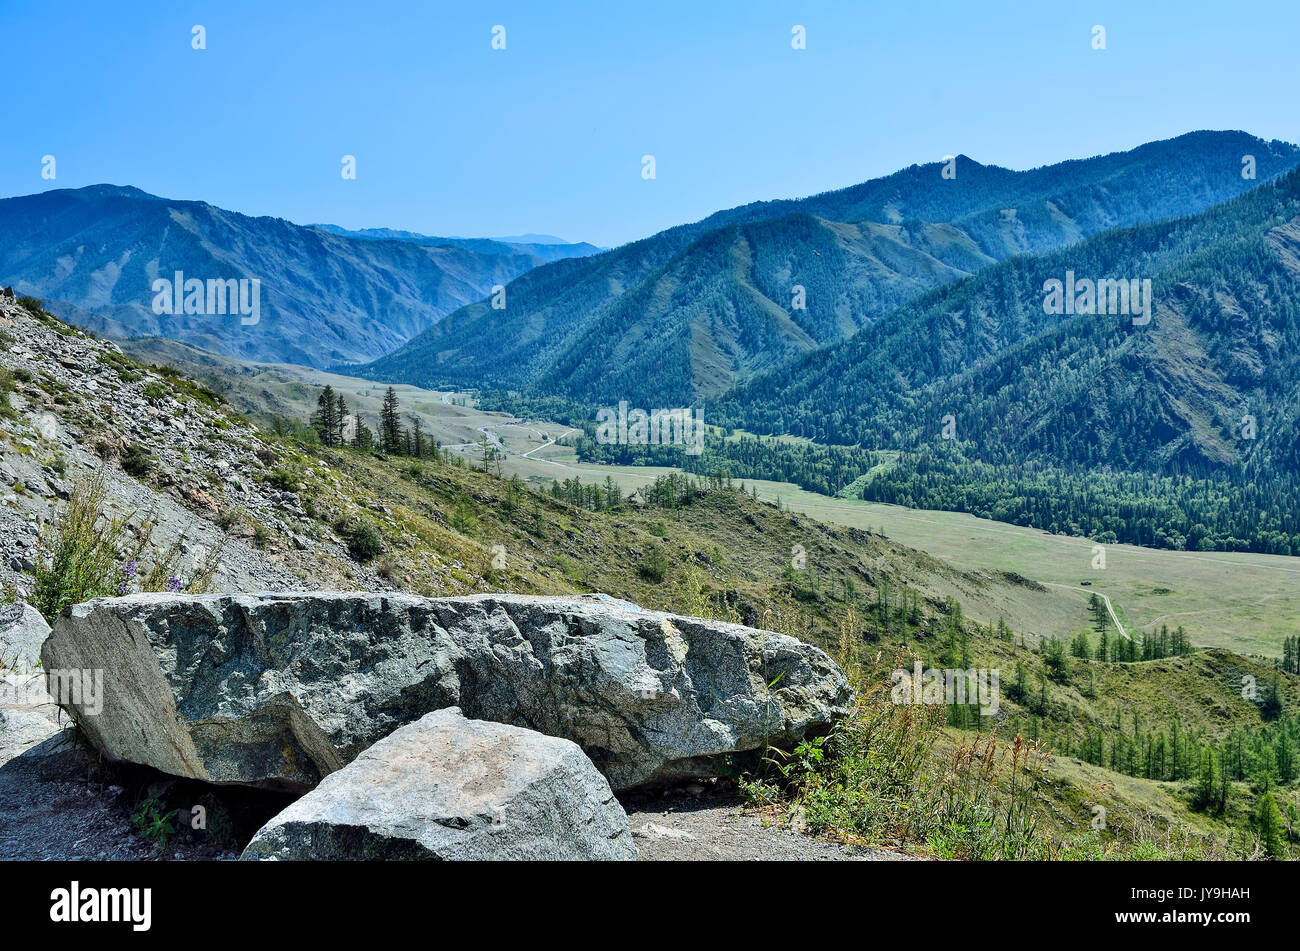 Beau paysage de montagnes d'été, l'Altaï, en Russie. Chaînes de montagnes couvertes de forêt, une route à travers la vallée et deux gros rochers au foregrou Banque D'Images